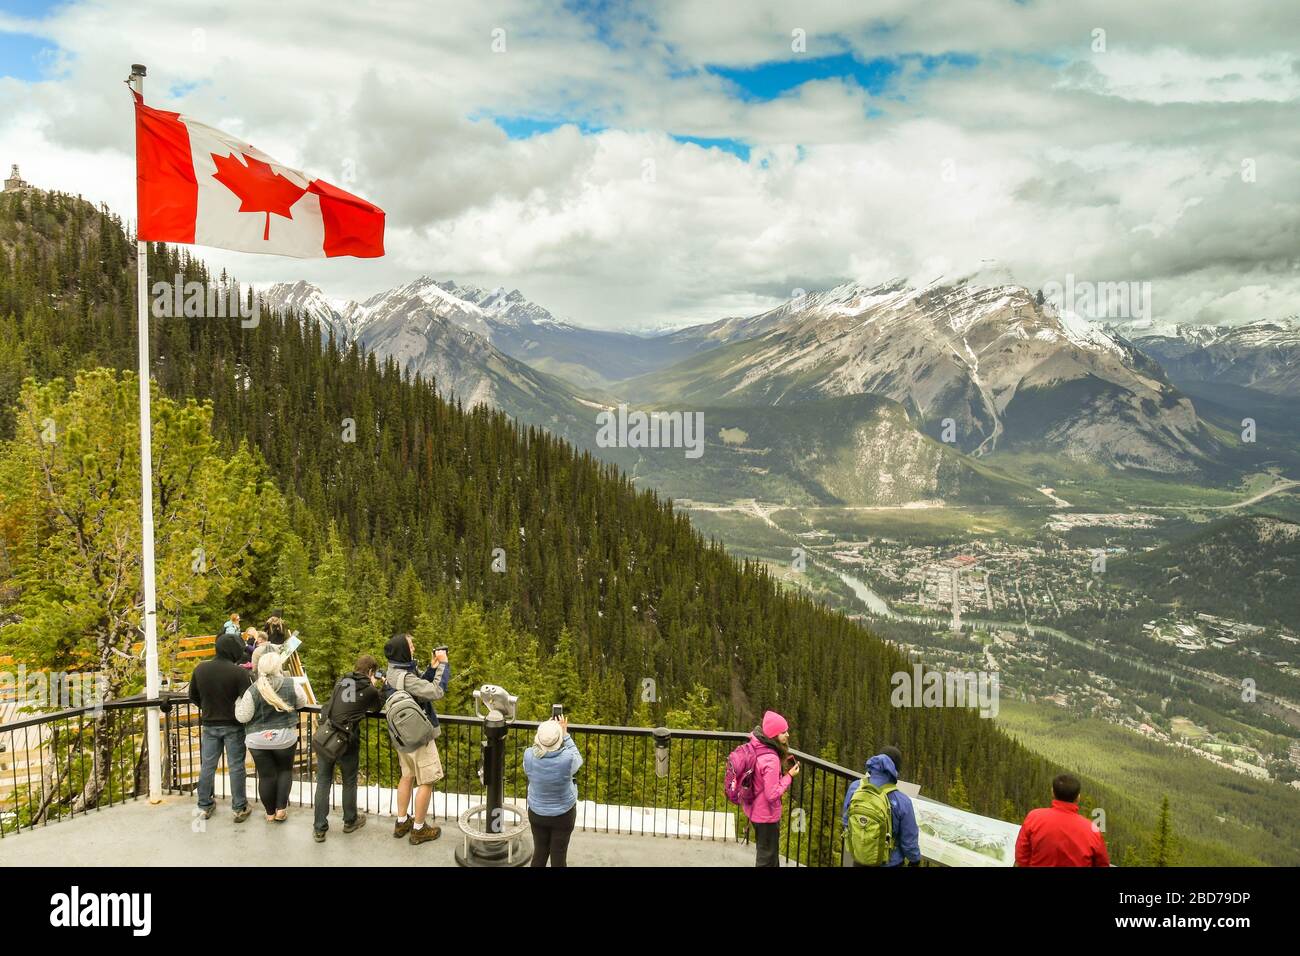 BANFF, AB, Kanada - Juni 2018: Besucher auf dem Aussichtspunkt auf dem Gipfel des Sulphur Mountain im Banff. Stockfoto